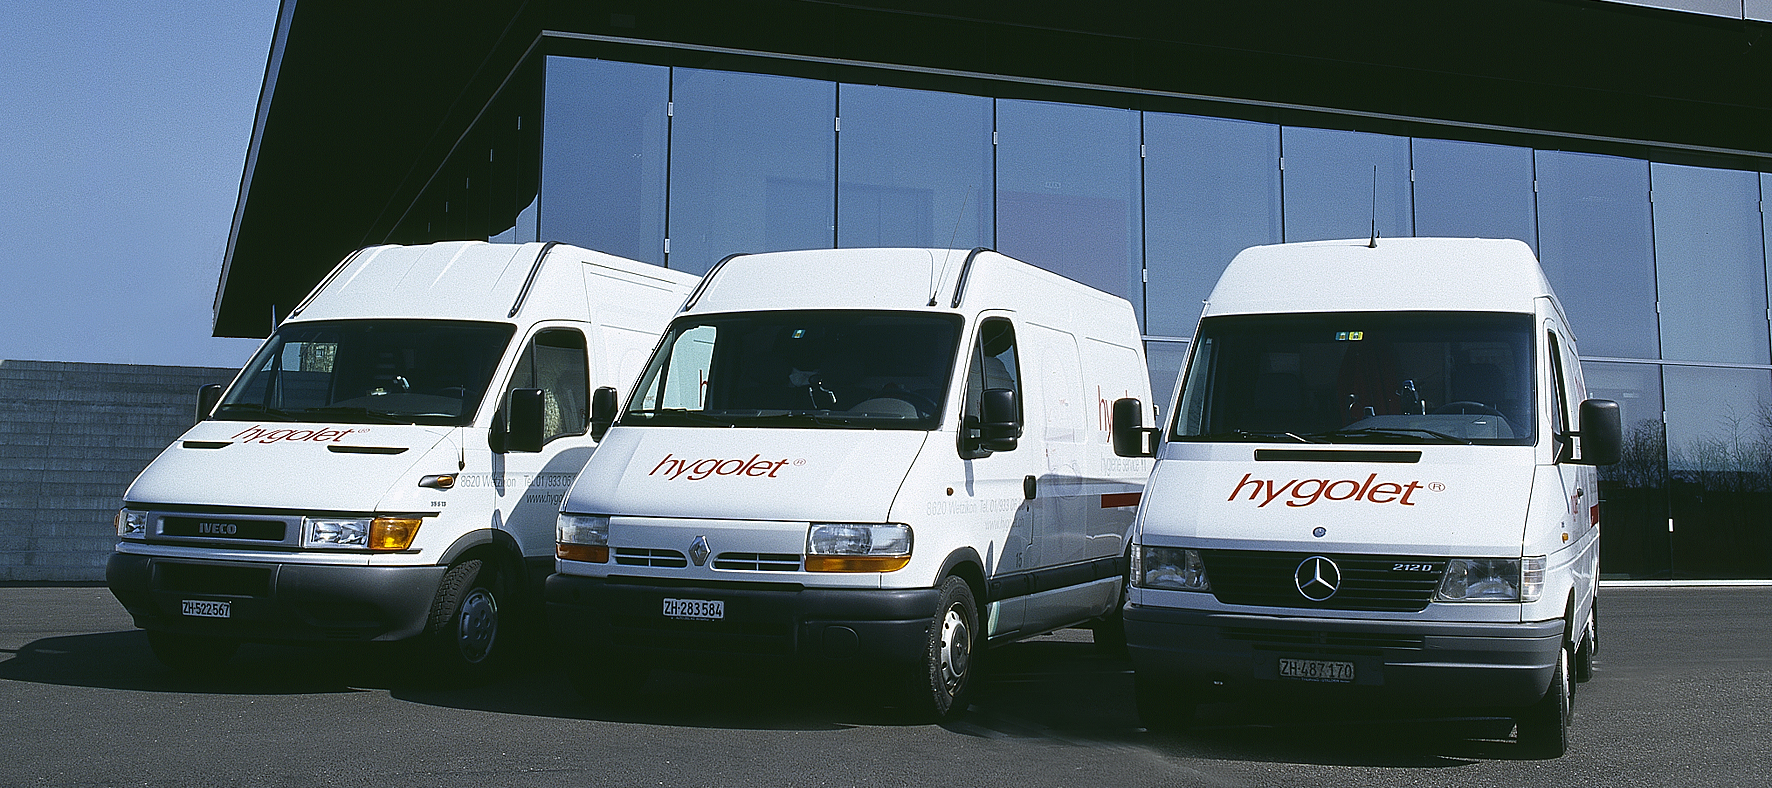 Hygolet delivery vans